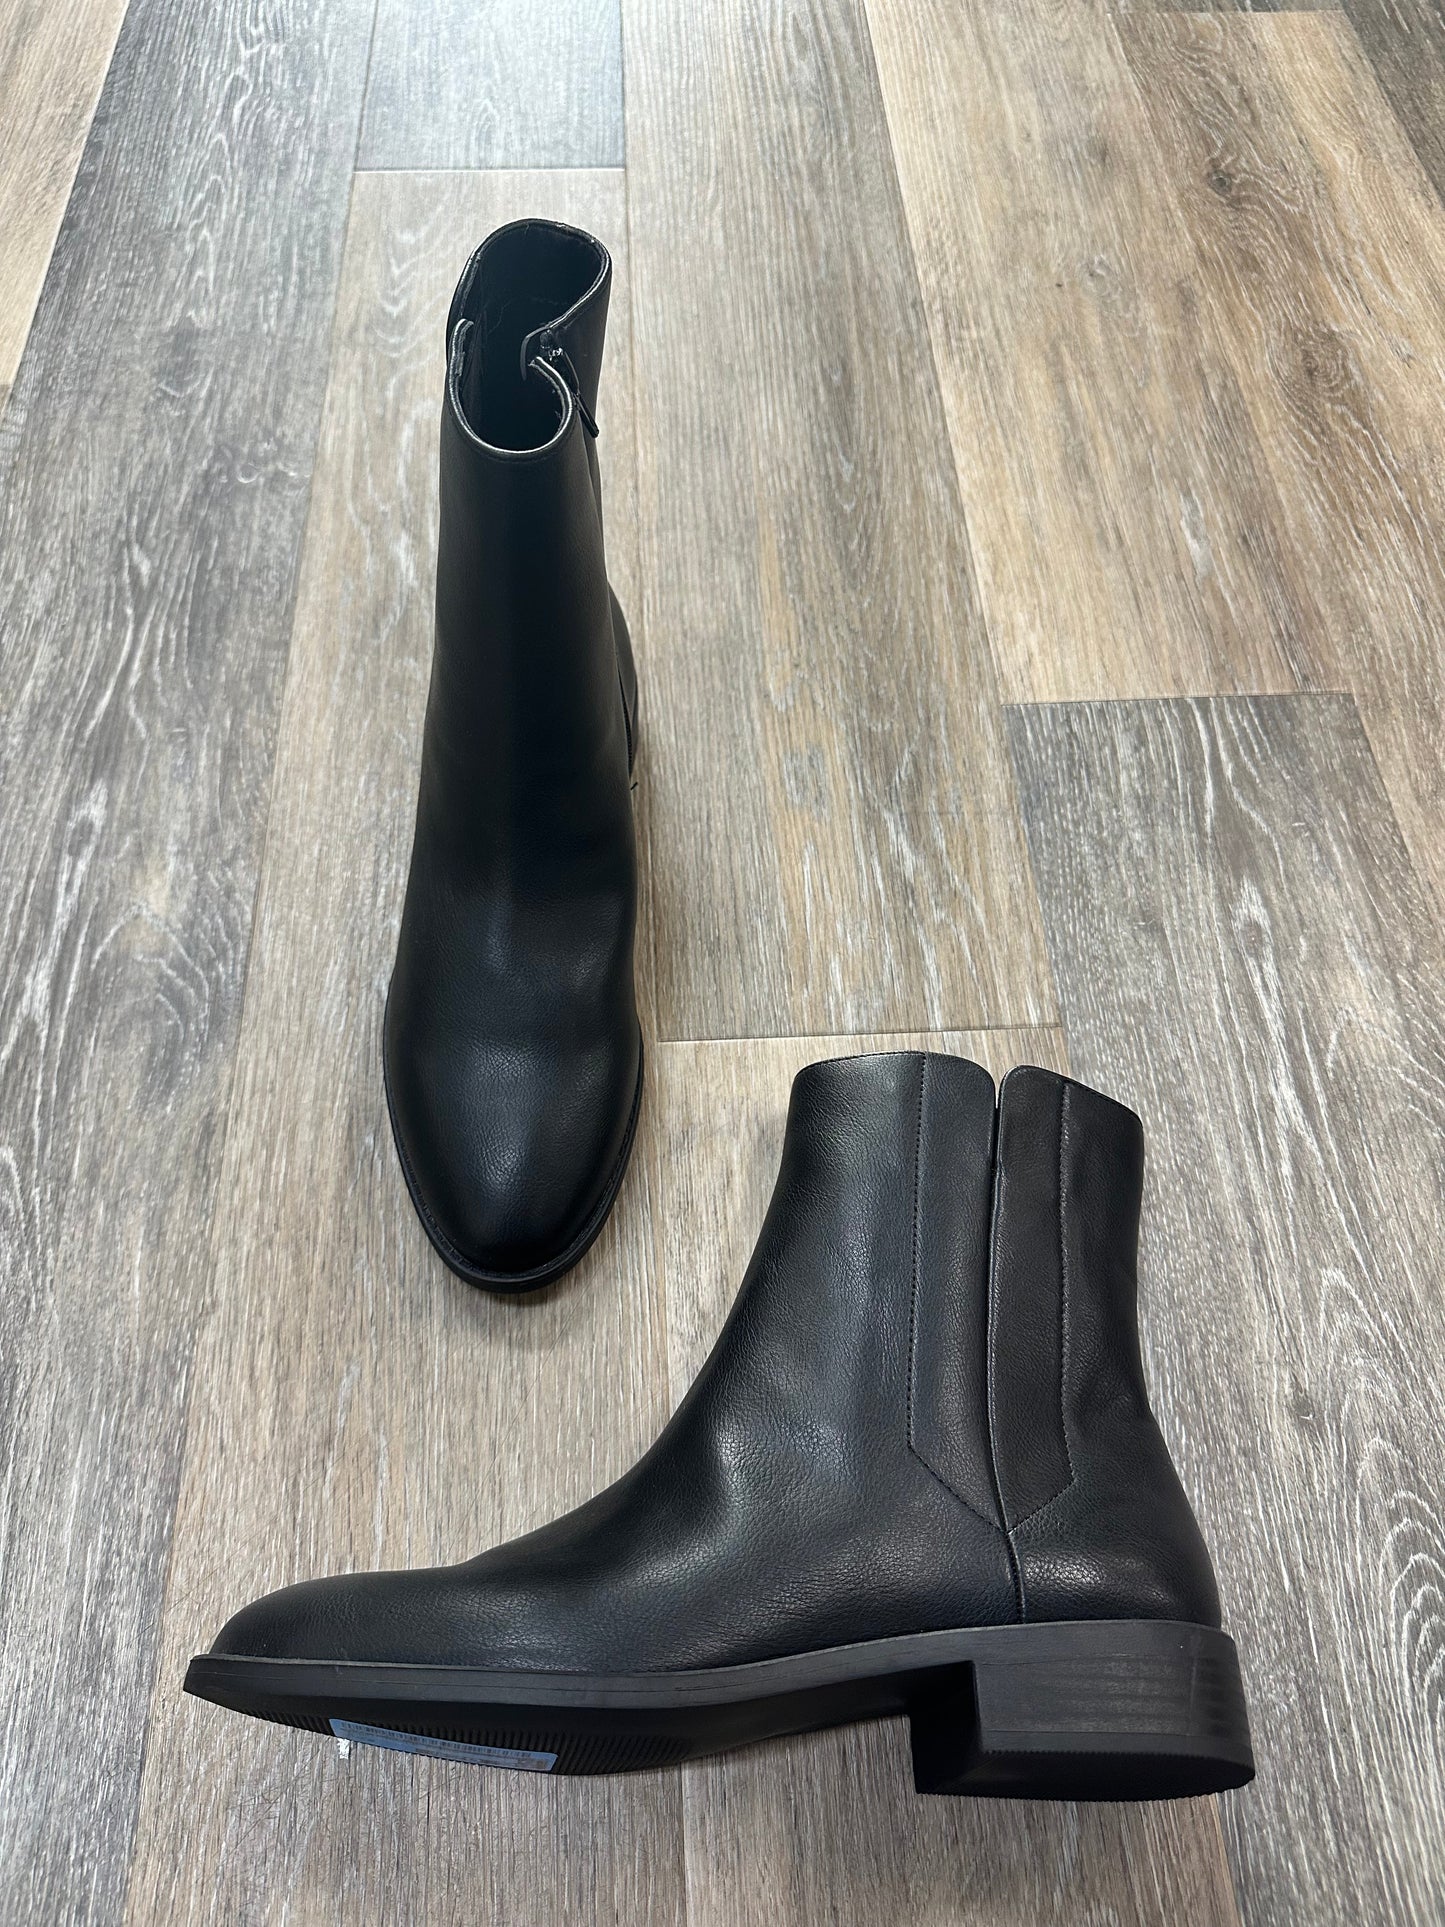 Black Boots Ankle Flats Loft, Size 9